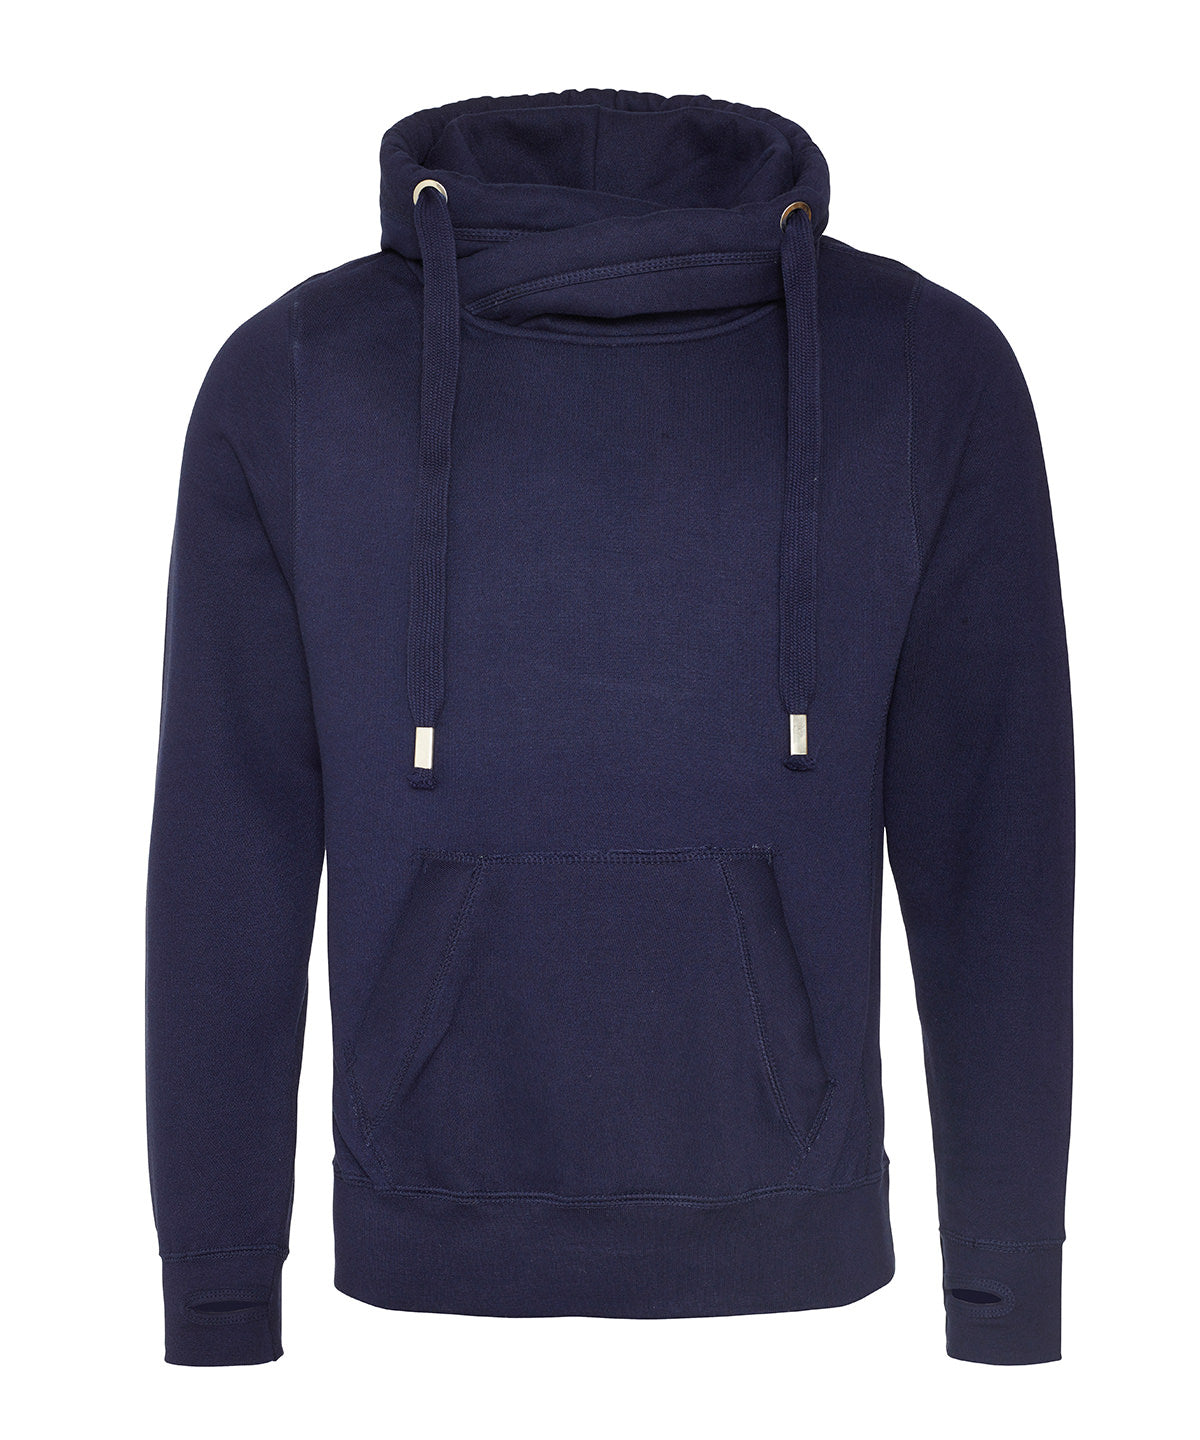 Personalised Hoodies - Black AWDis Just Hoods Cross neck hoodie